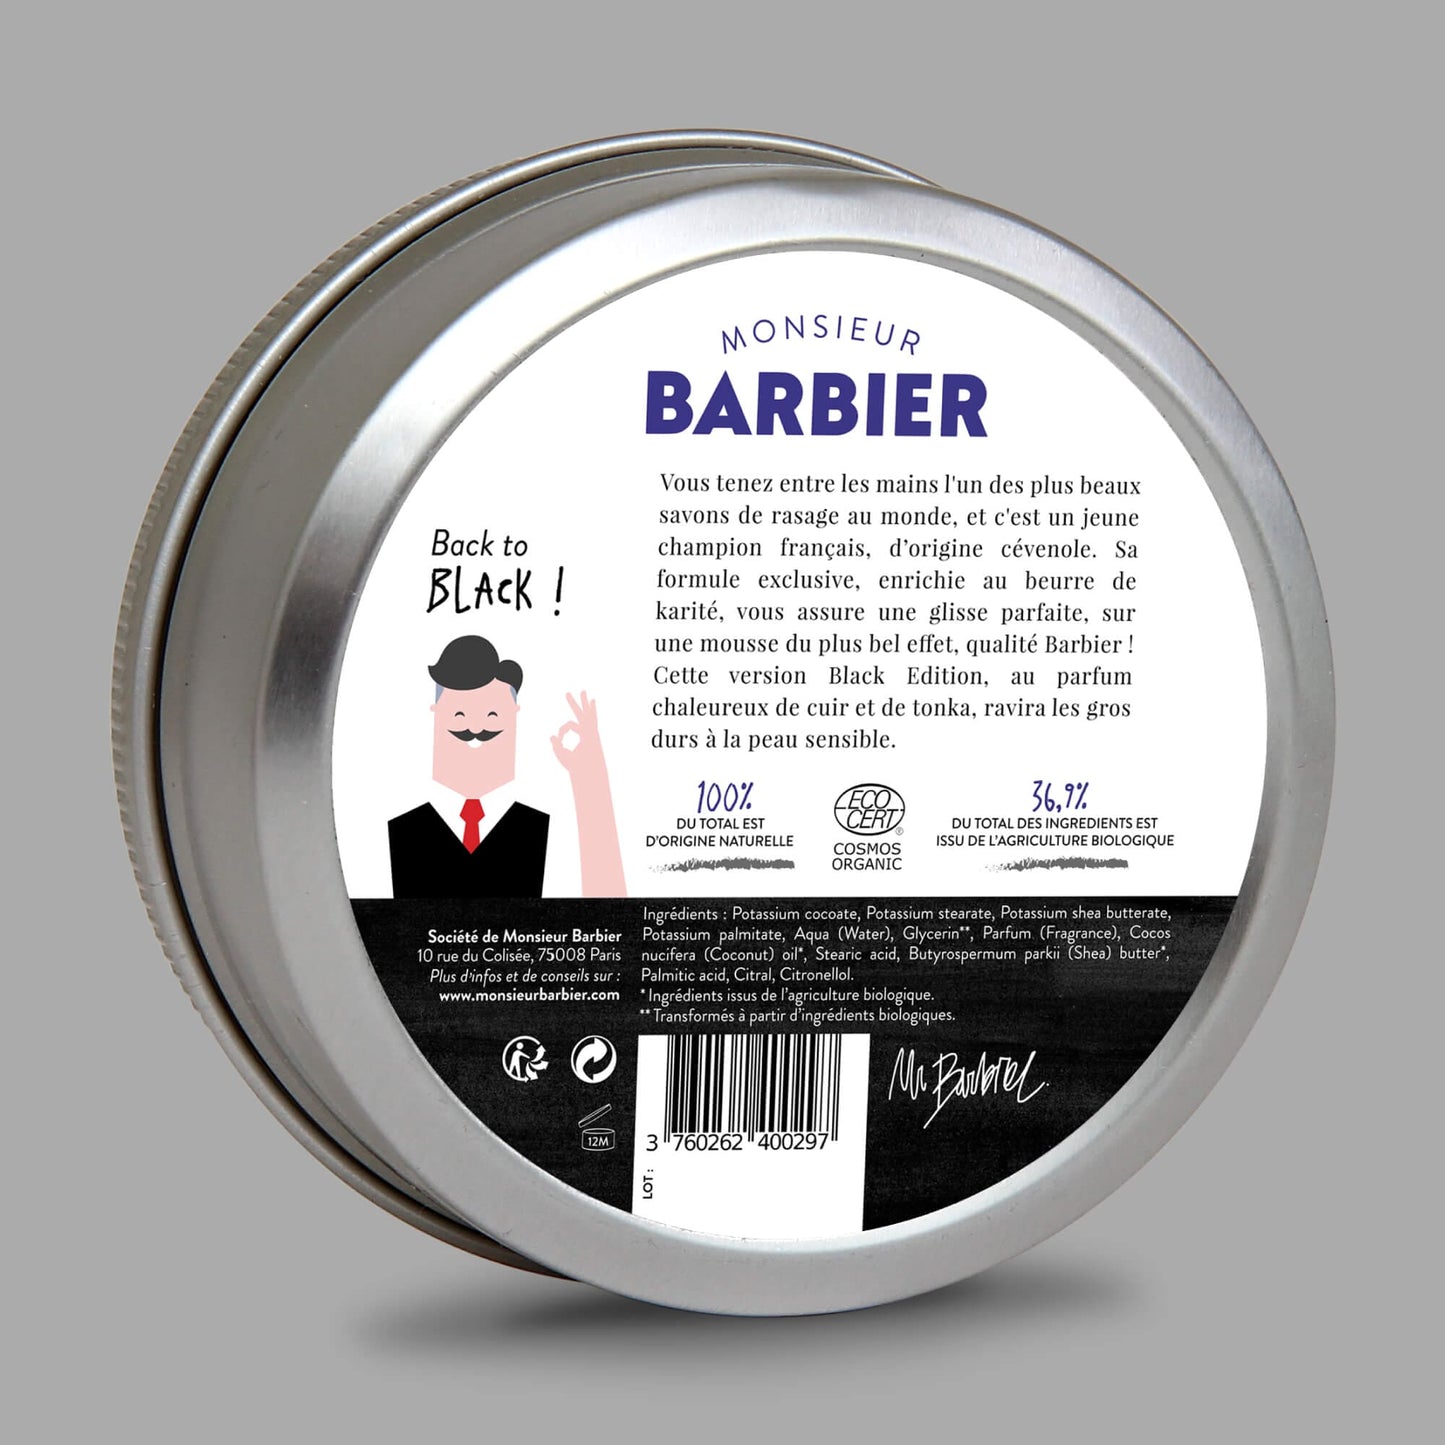 Arrière de la boîte de savon de rasage Monsieur BARBIER BLACK EDITION, informations produit et adresse, certification bio, 36,9% total des ingrédients issus de l'agriculture biologique.